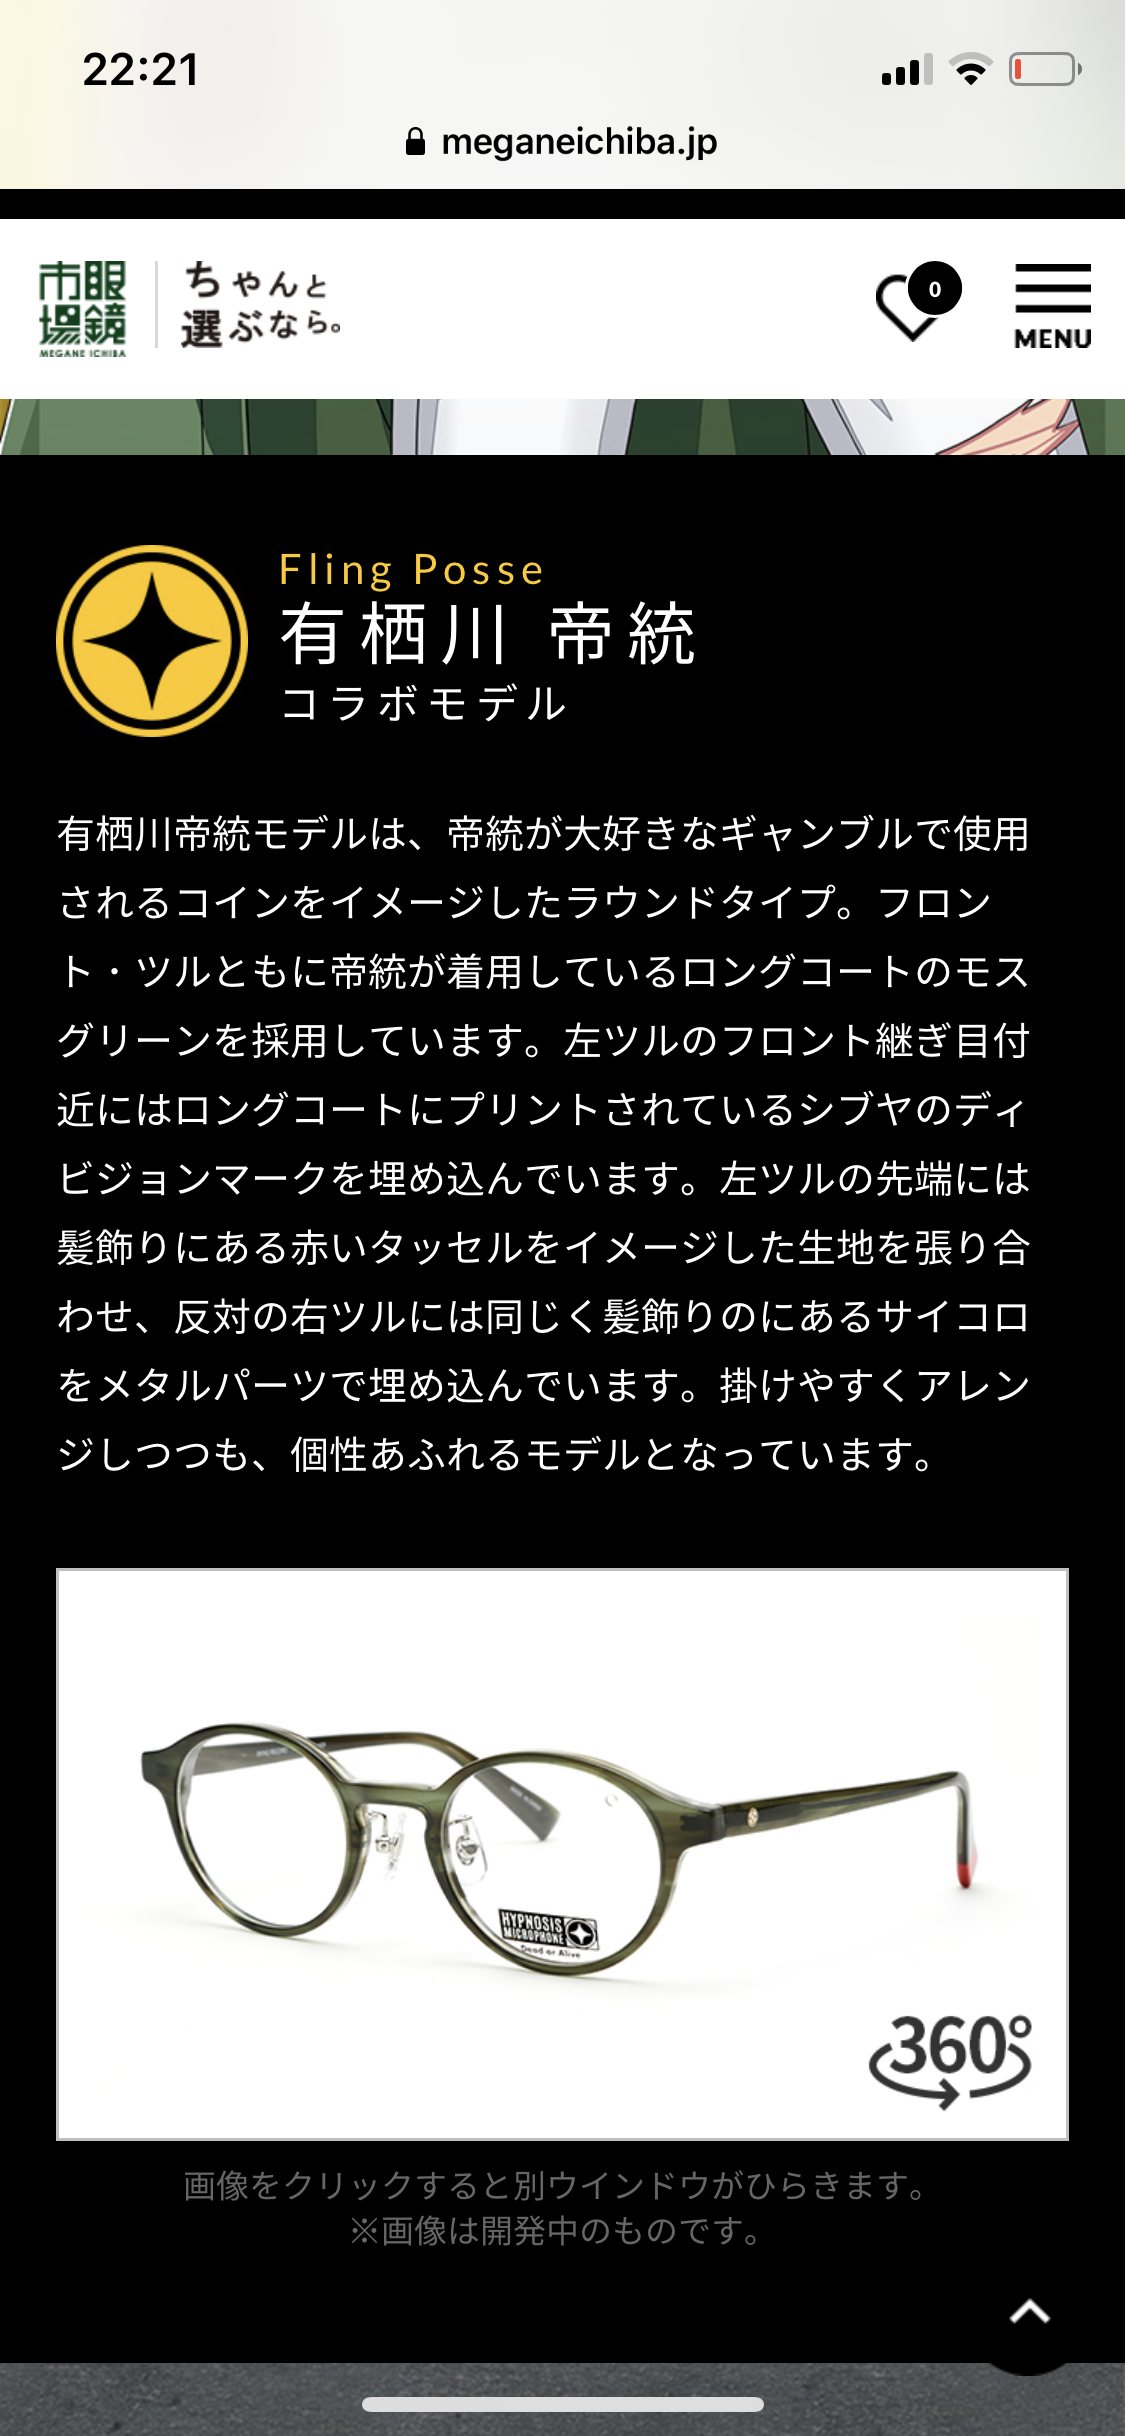 注目の 値下げ ヒプノシスマイク 眼鏡市場 コラボメガネ 伊弉冉一二三モデル 在庫限りッ アウトレット